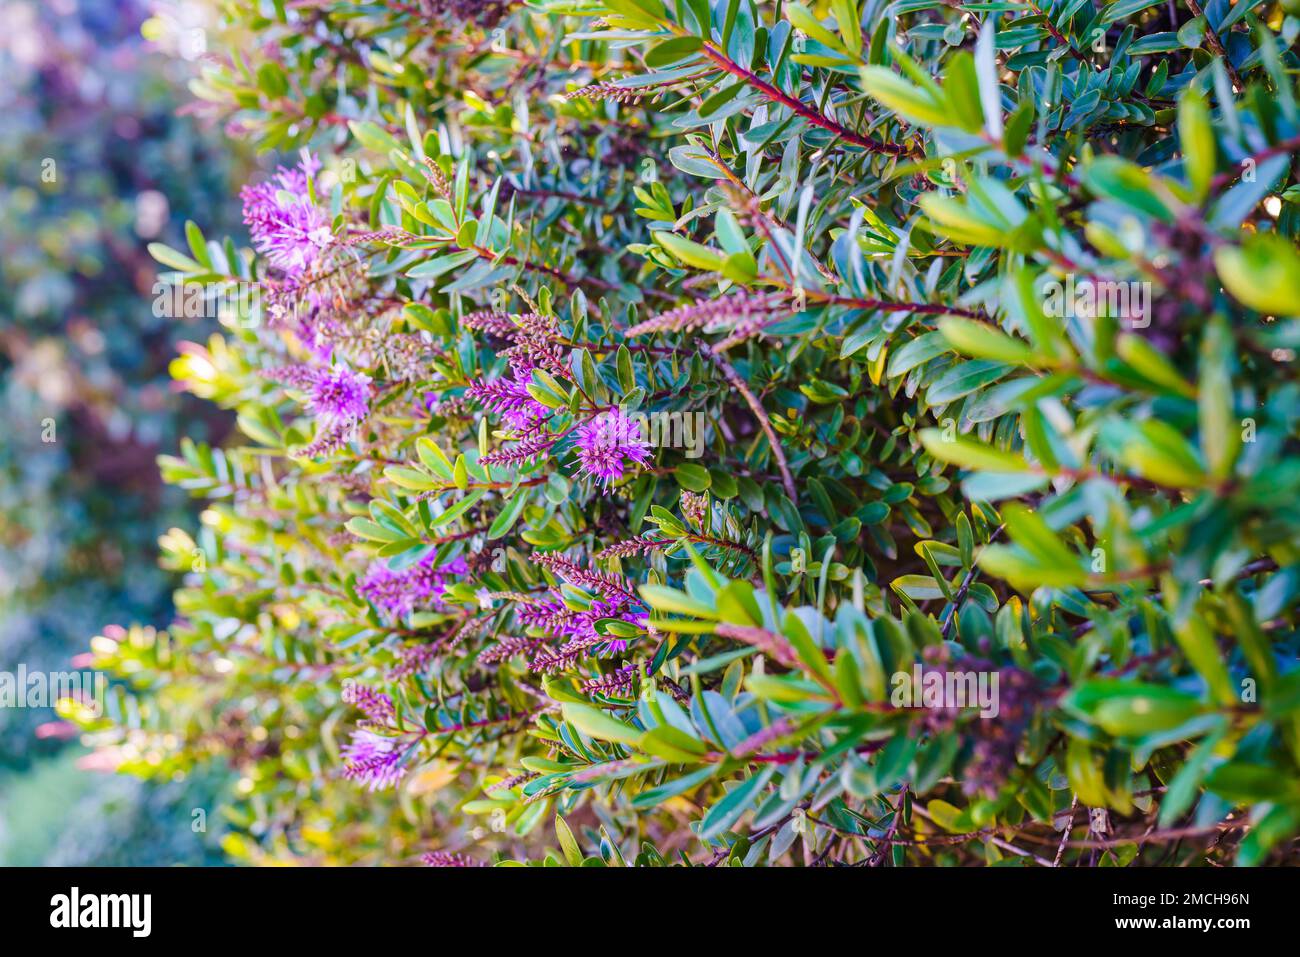 Die strauchpflanze veronica oder hebe, Zierpflanze mit wunderschönen  rosa-violetten Blumen, Nahaufnahme im Garten an sonnigen Tagen  Stockfotografie - Alamy